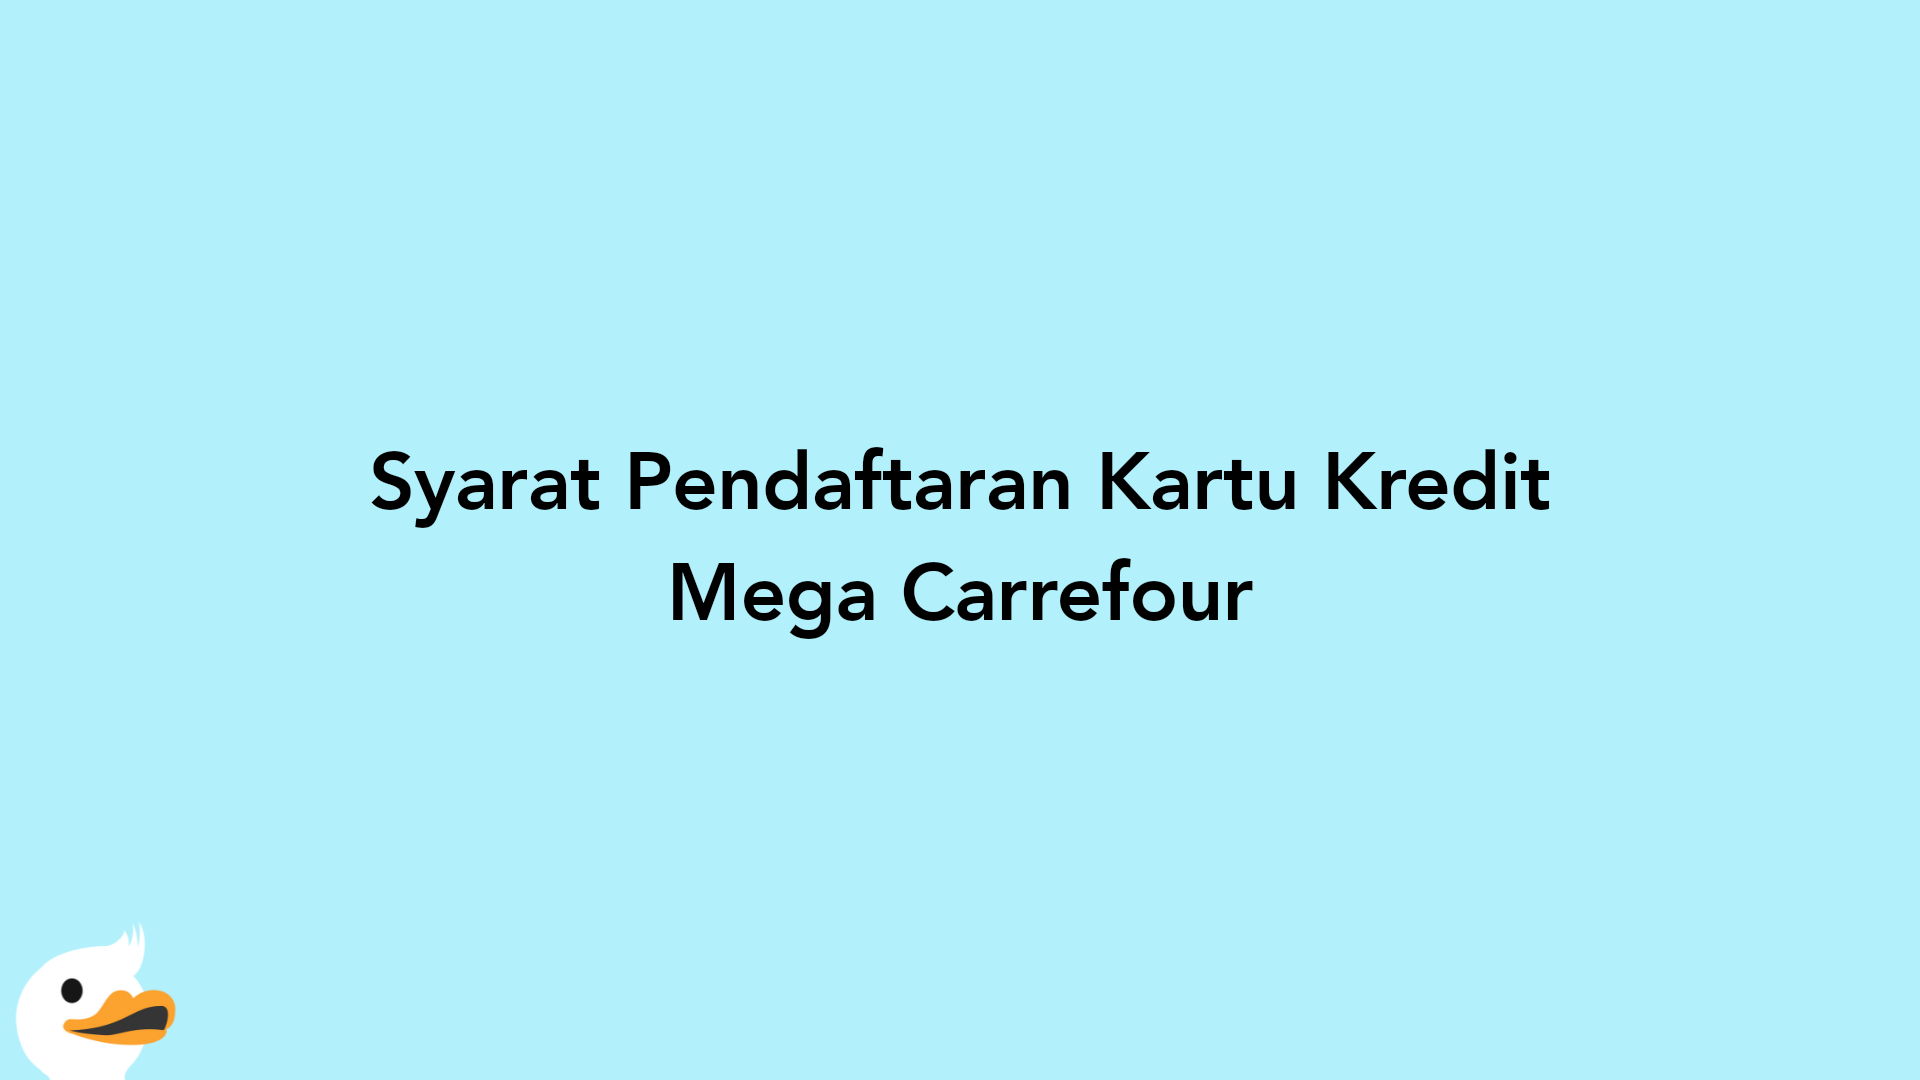 Syarat Pendaftaran Kartu Kredit Mega Carrefour